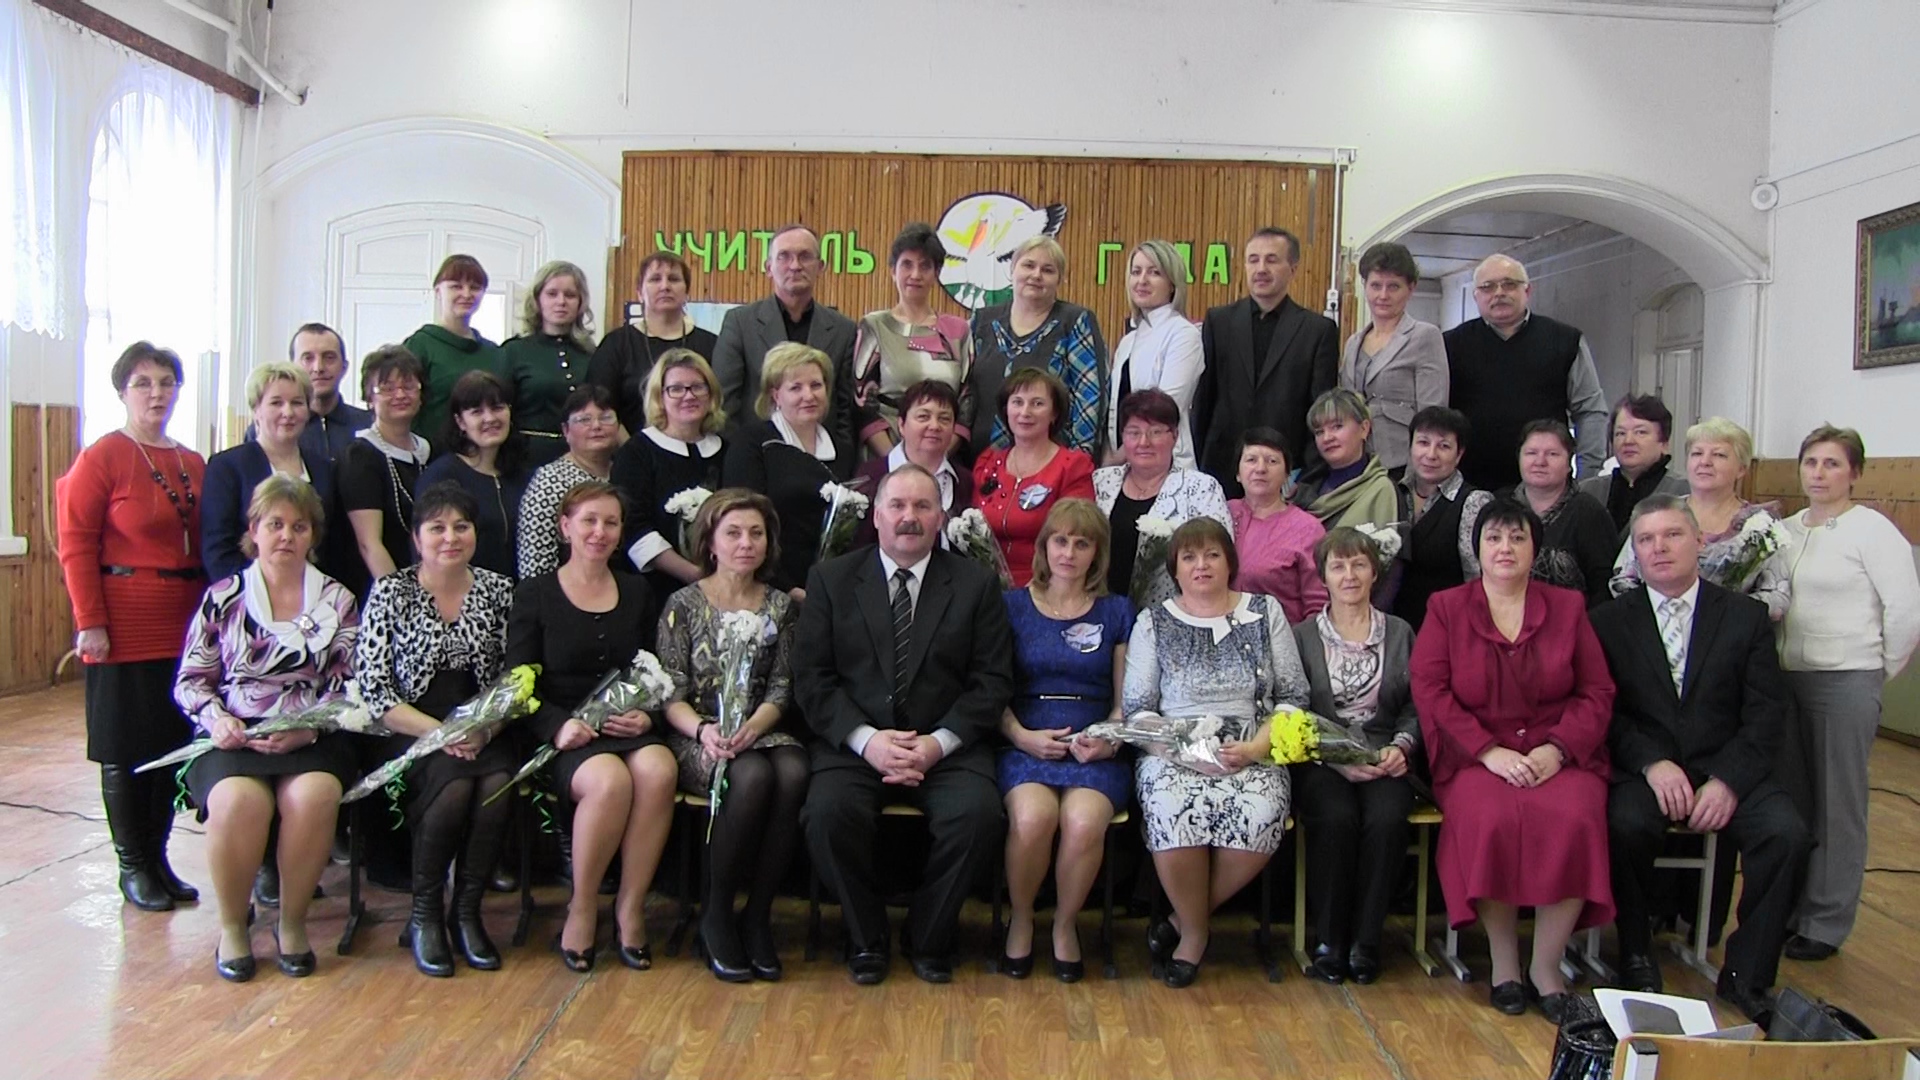 фото учителей 80 годов ленинск кузнецкого района